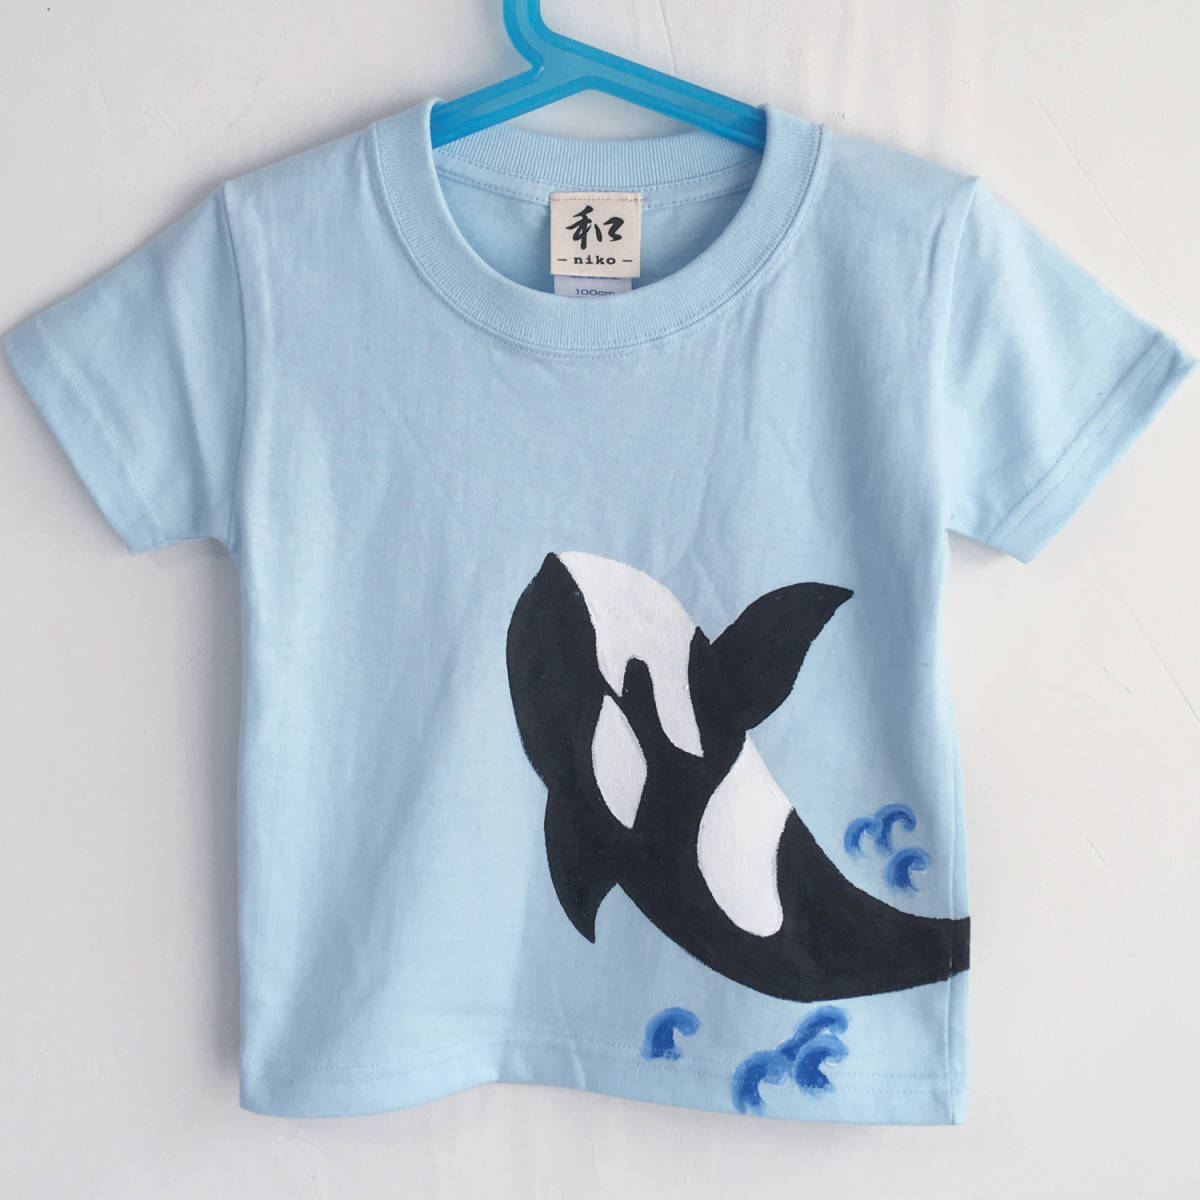 키즈 티셔츠, 사이즈 110, 파란색, 범고래 티셔츠, 손으로 그린 범고래 티셔츠, 짧은 소매, 동물, 어린이 의류, 수공, 상의, 반소매 티셔츠, 110(105~114cm)